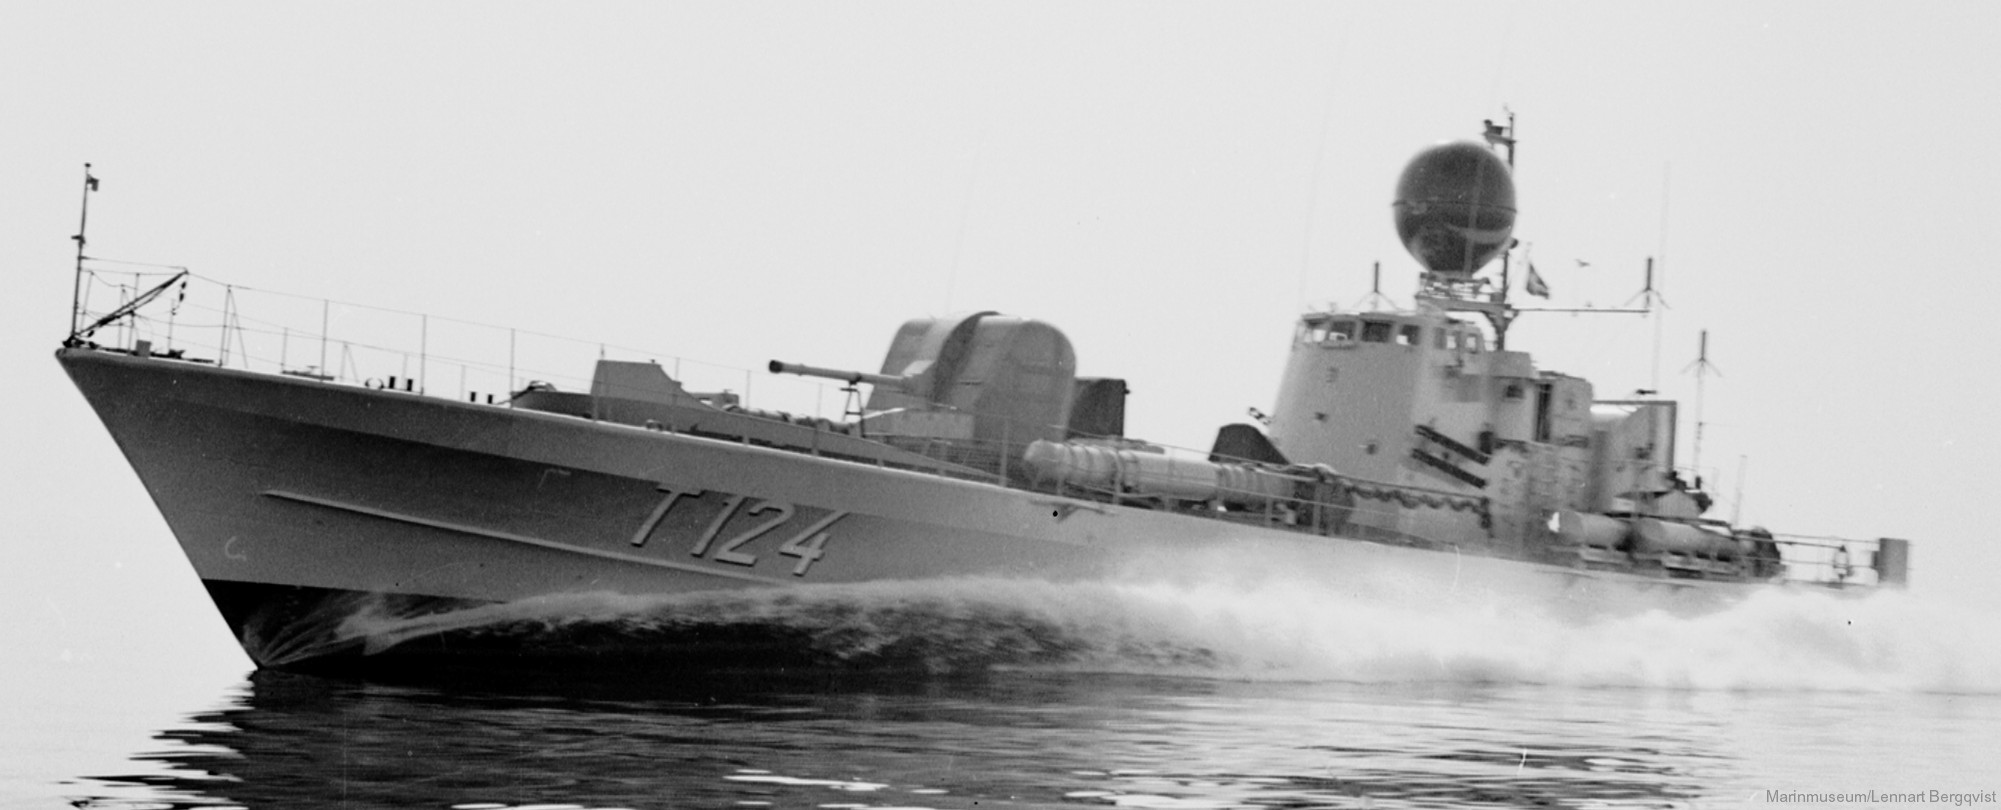 t124 castor hswms hms spica class fast attack craft torpedo boat vessel swedish navy svenska marinen 12